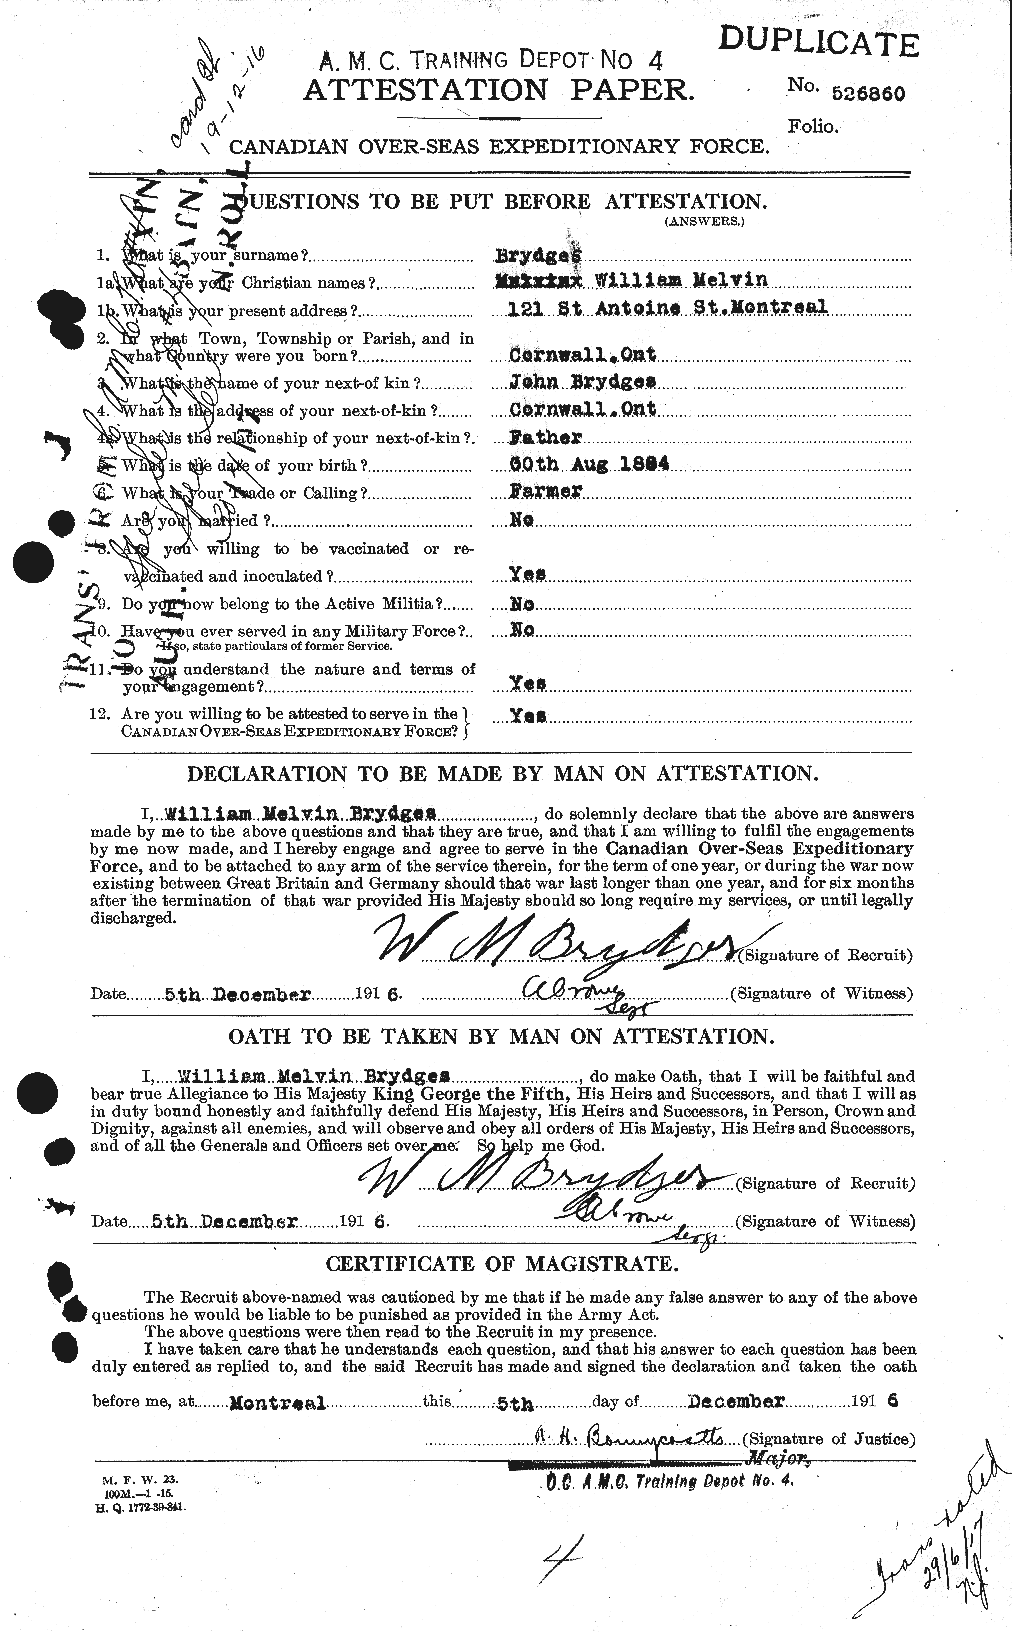 Dossiers du Personnel de la Première Guerre mondiale - CEC 268822a